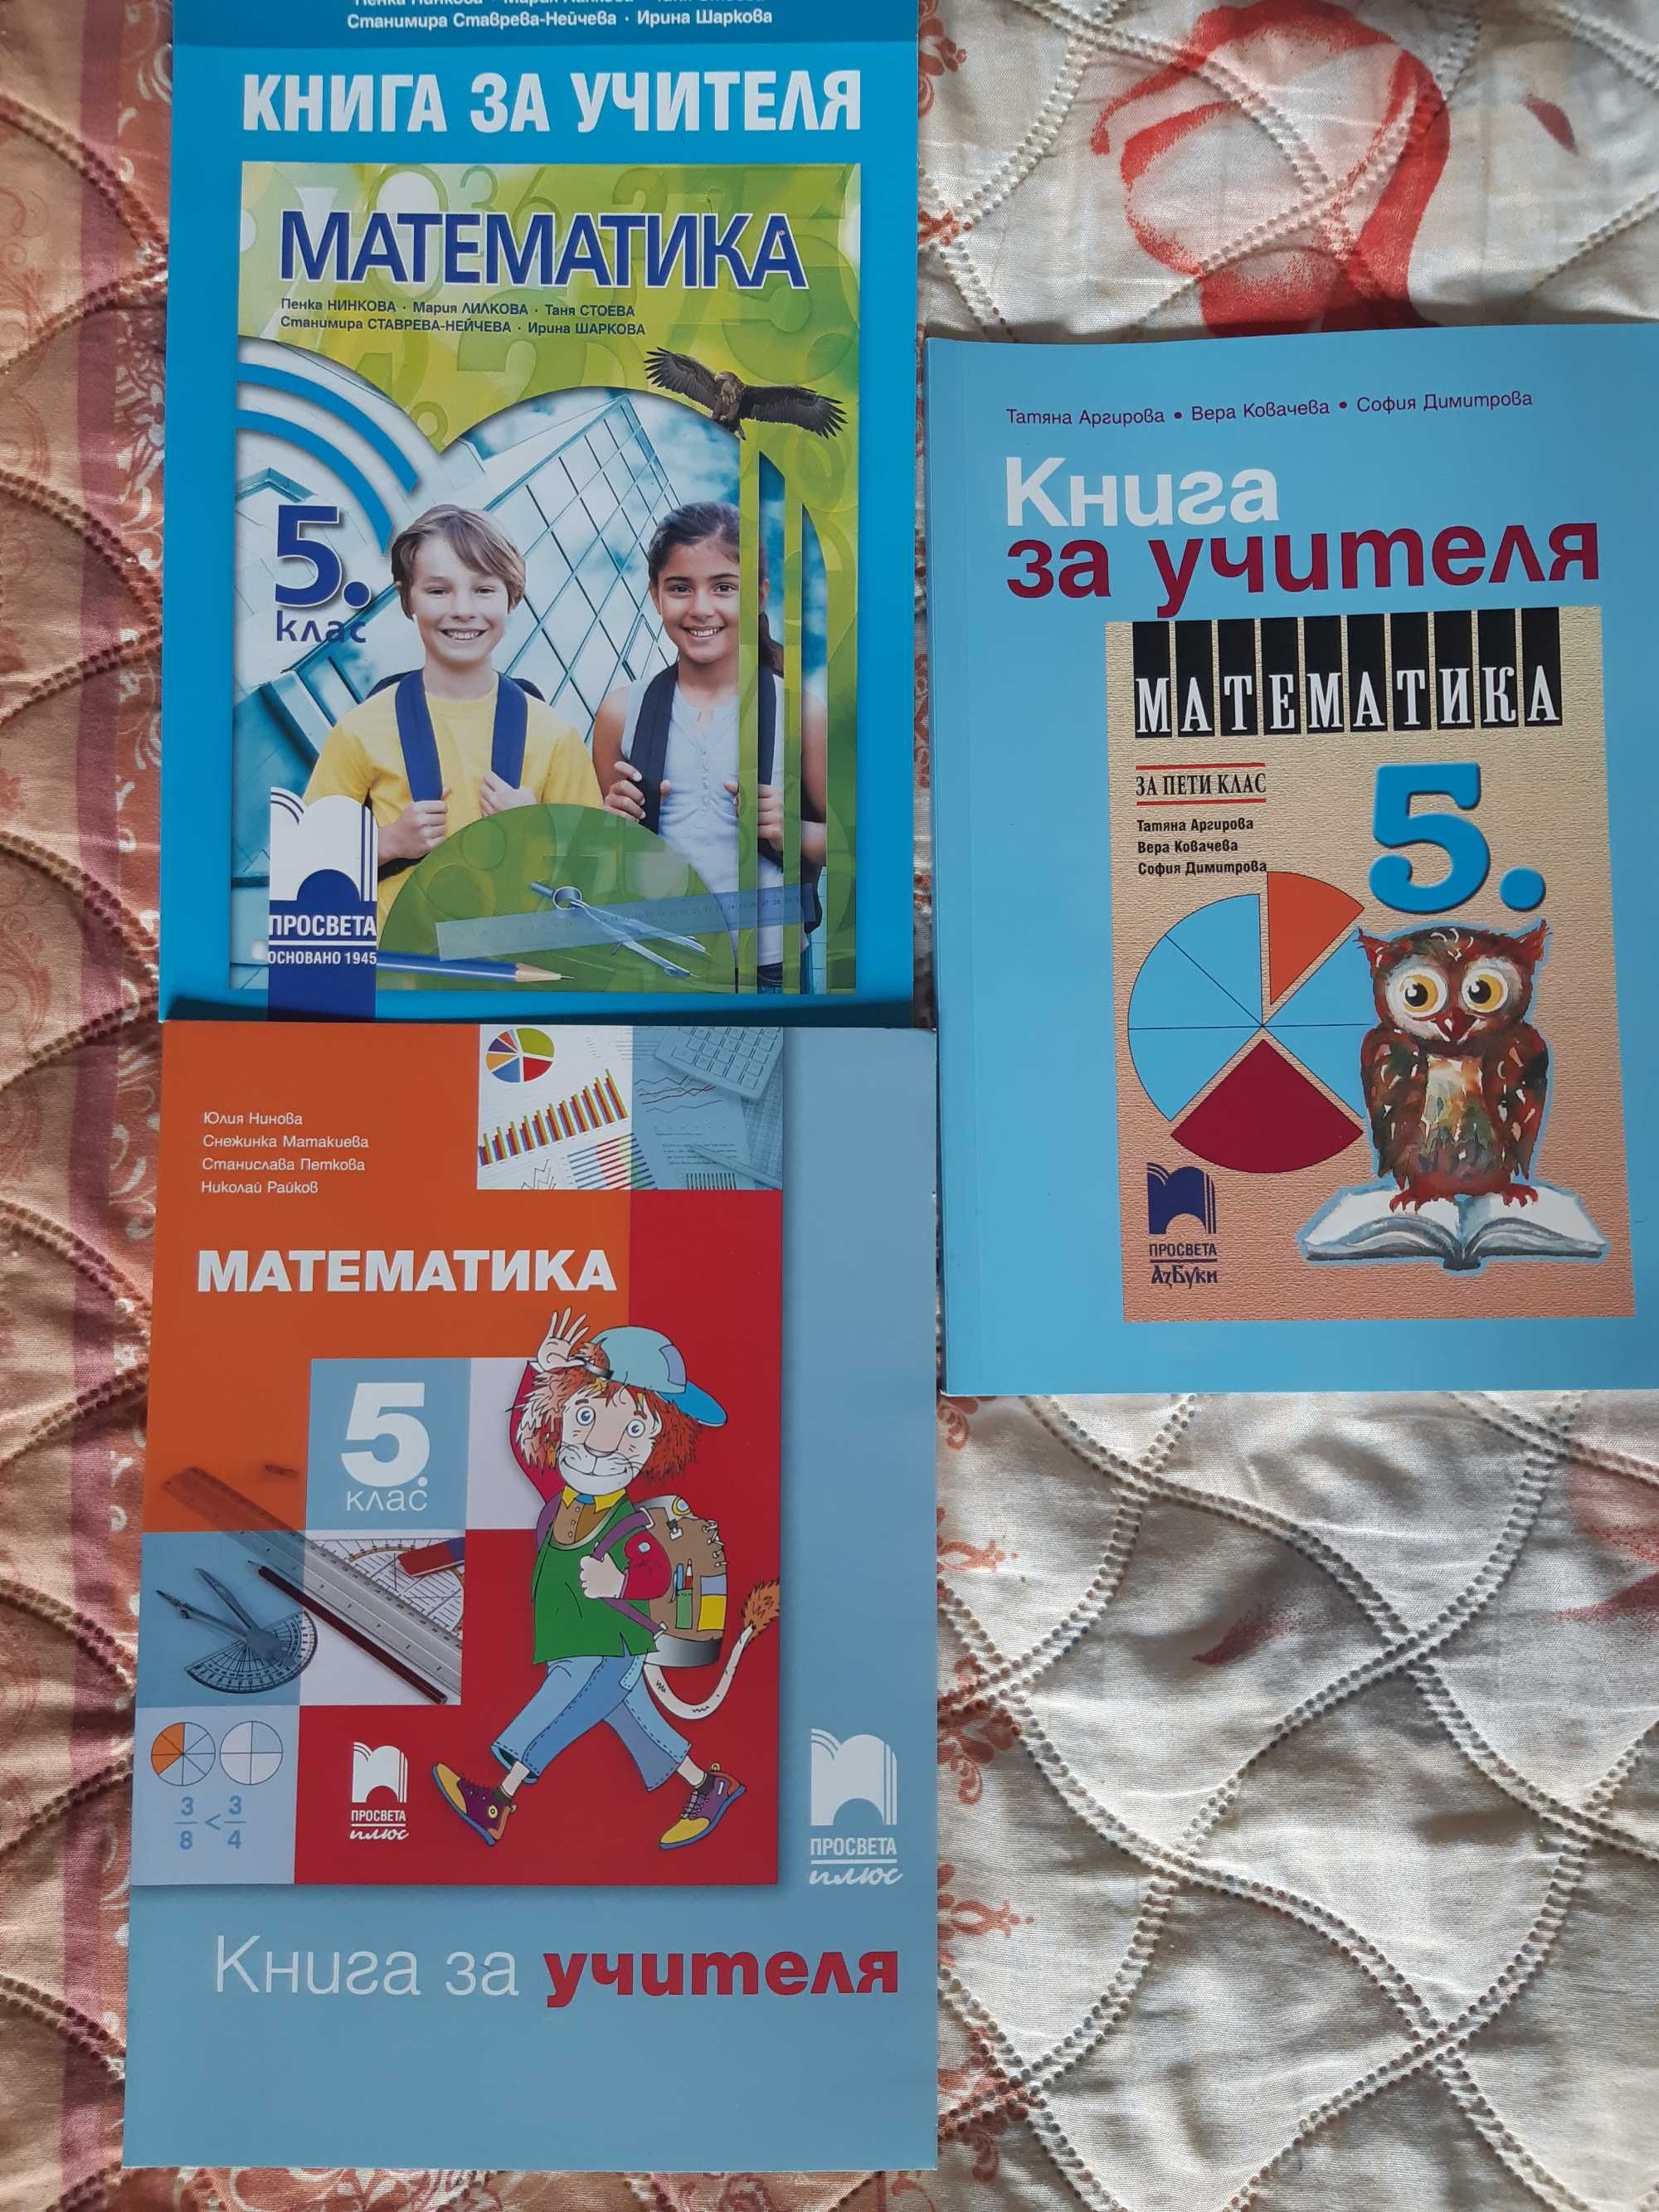 Учебници, тетрадки, сборник по математика и ИТ 5, 6 и 7 клас